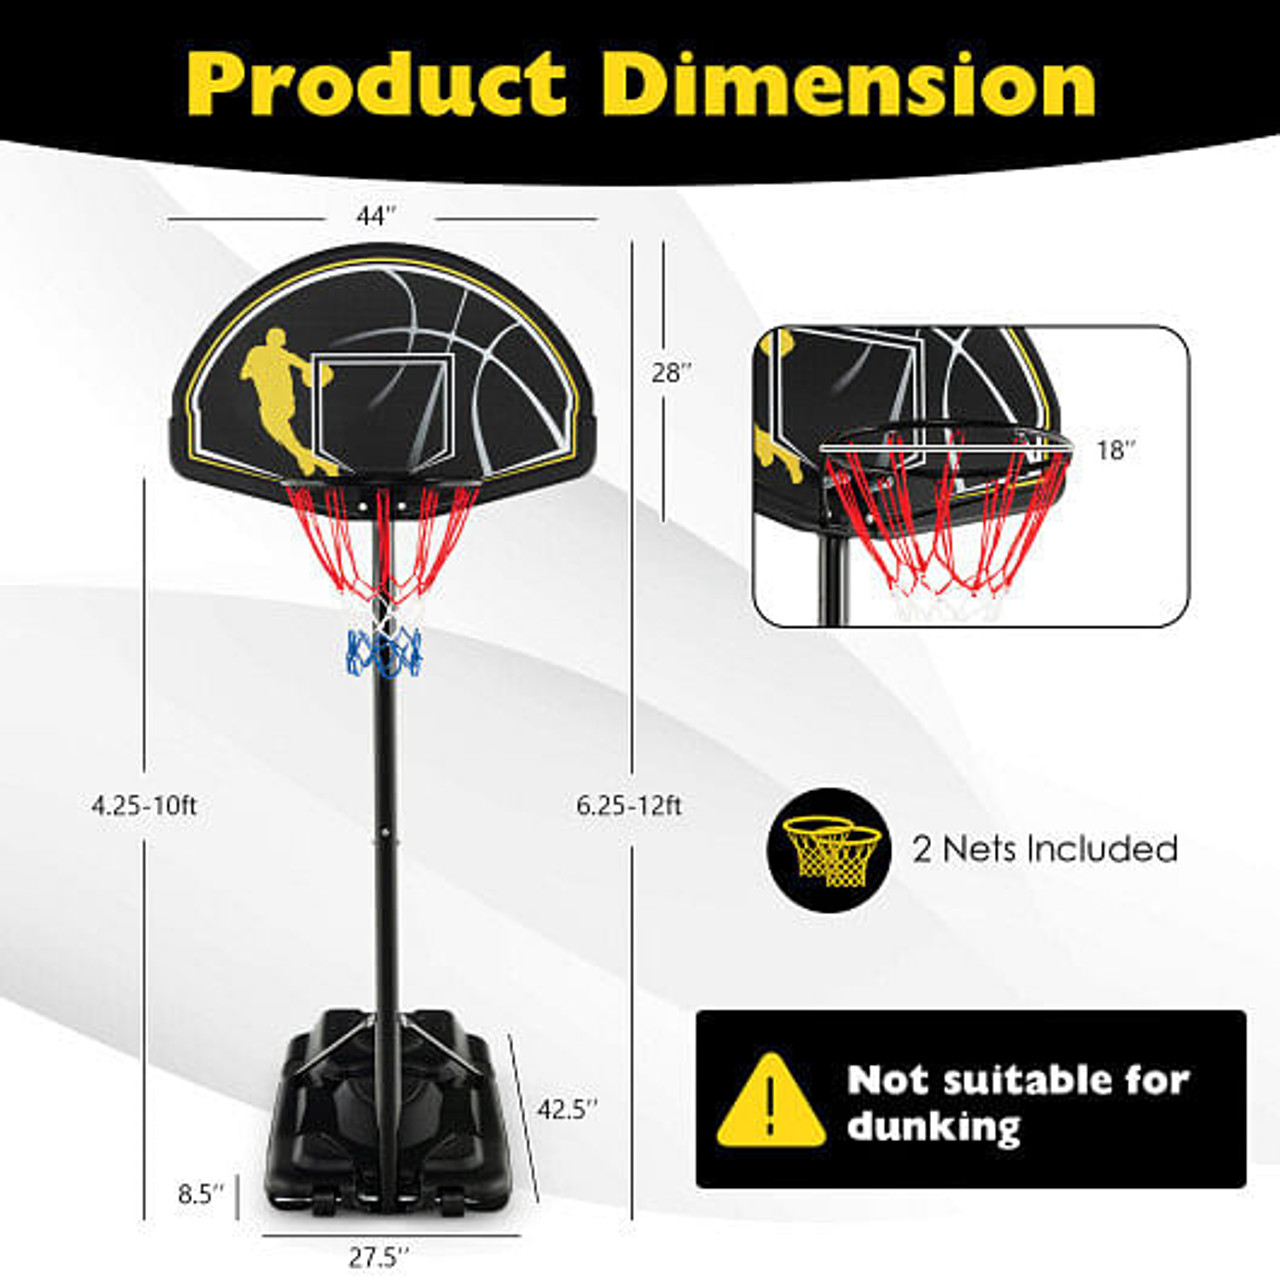 4.25-10 Ft Portable Adjustable Basketball Goal Hoop System